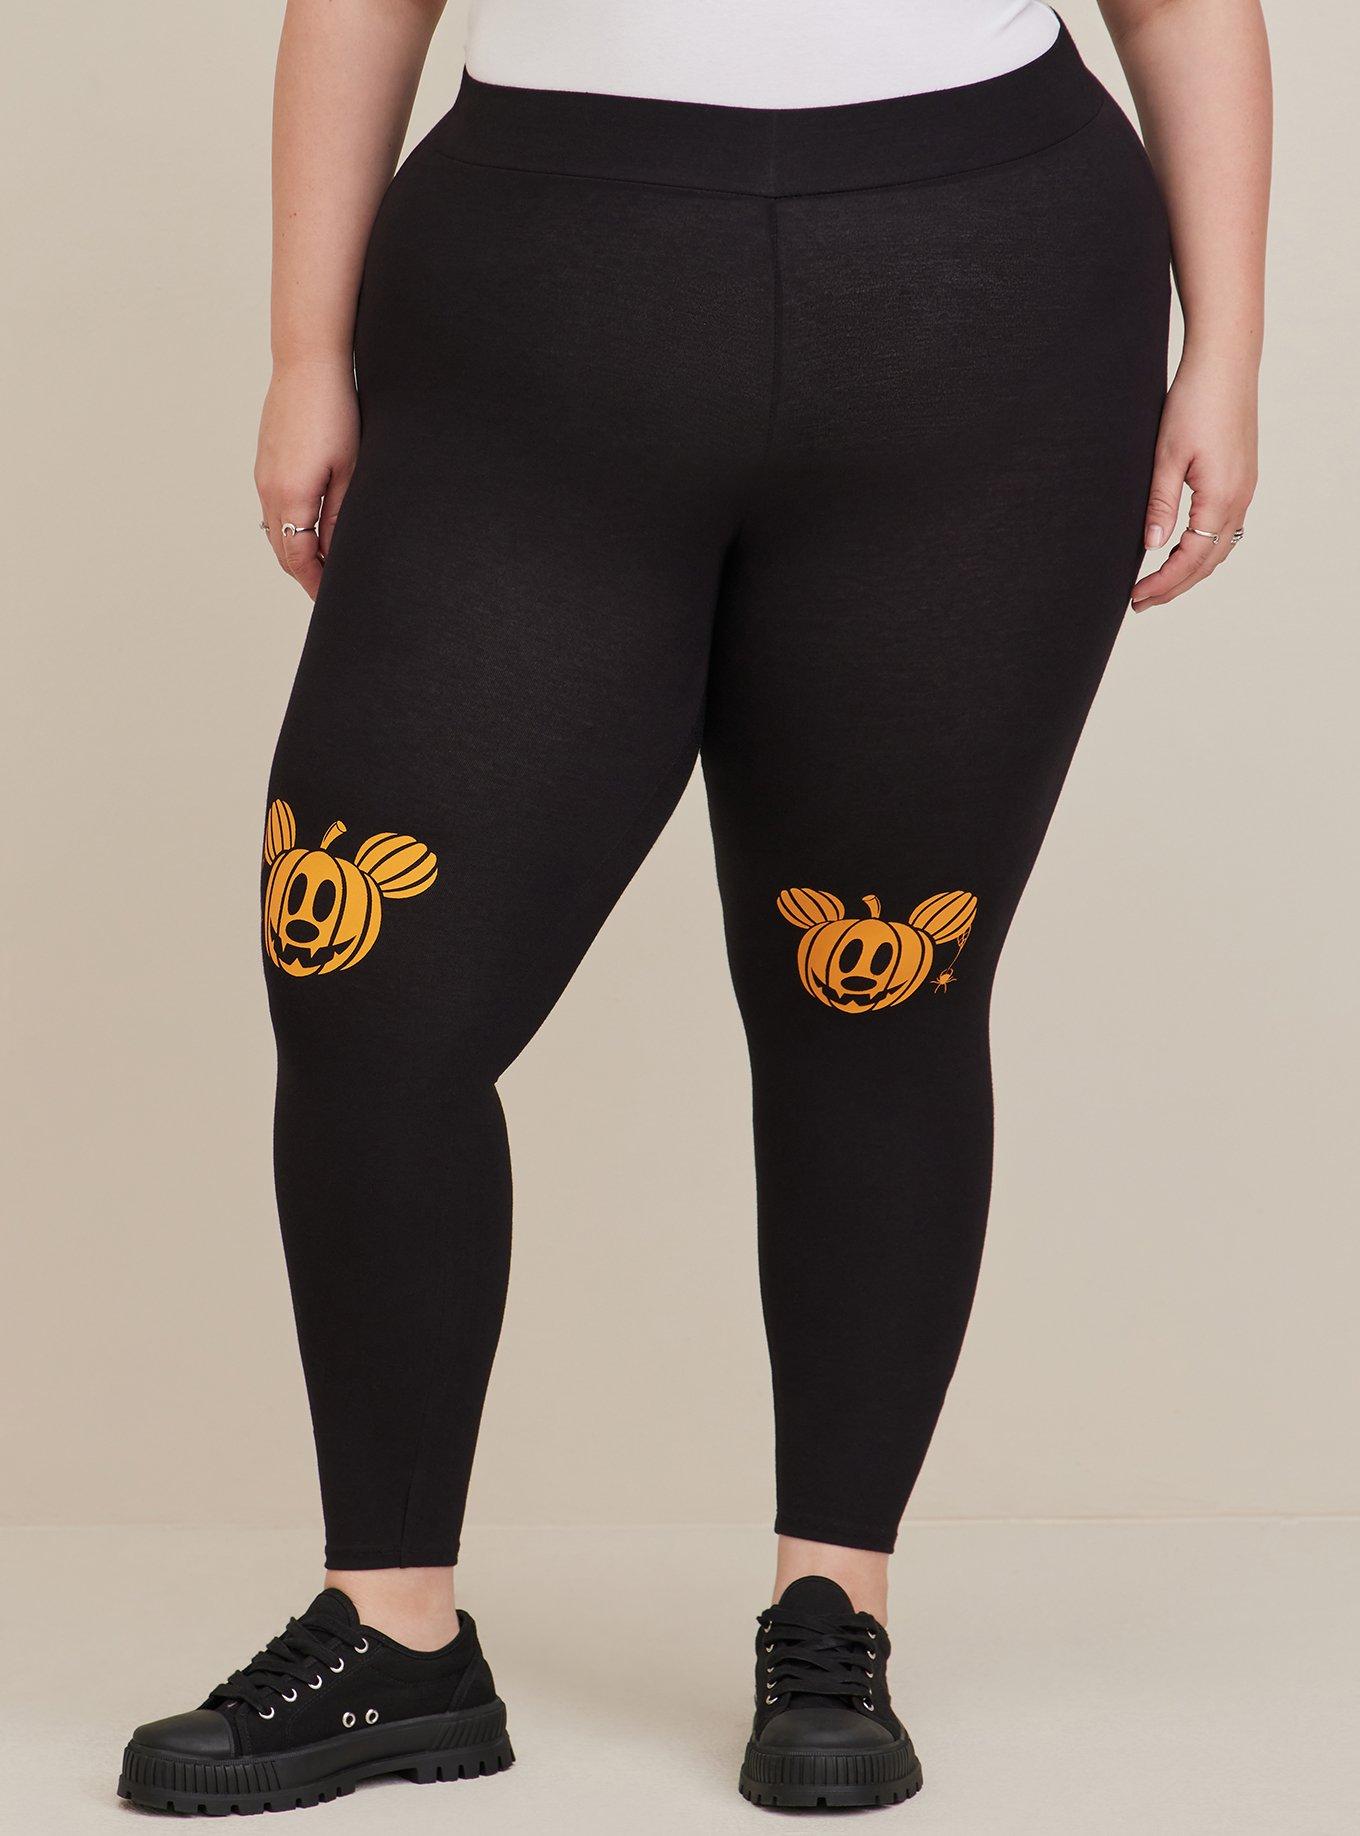 Plus Size - Disney Mickey Mouse Halloween Full Length Legging - Torrid